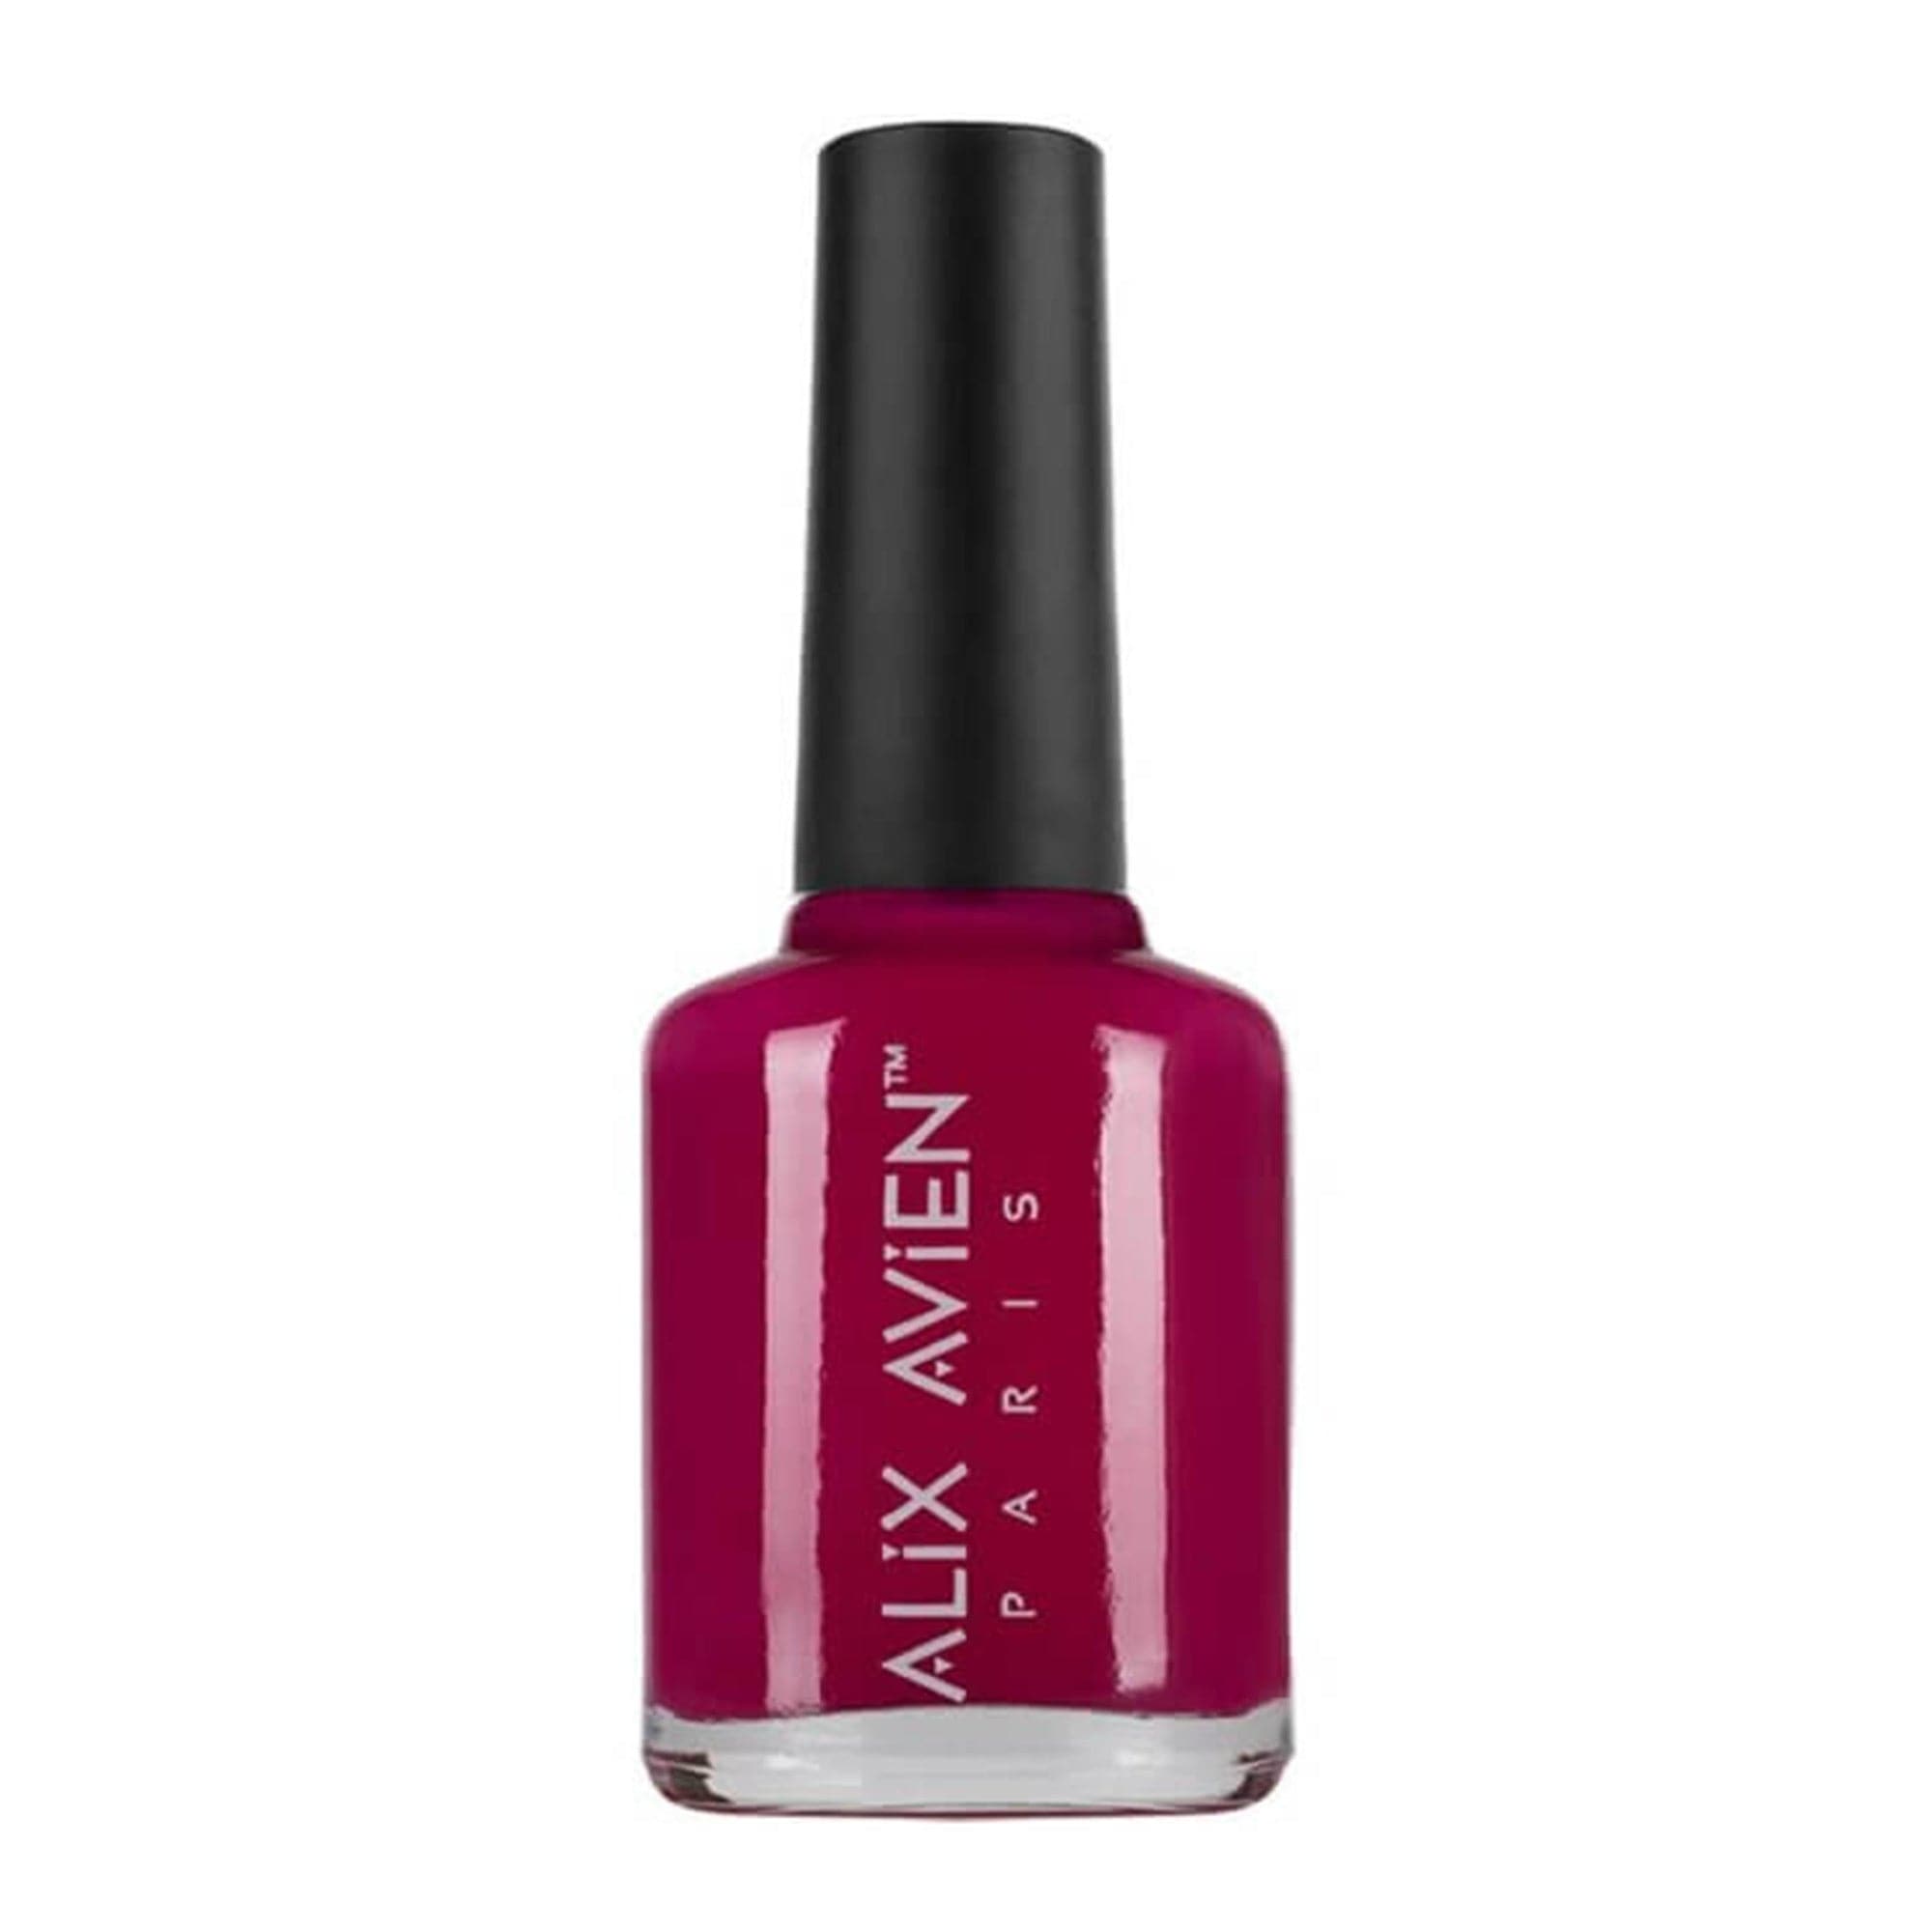 Alix Avien - Nail Polish No.18 (Hot Pink) - Eson Direct